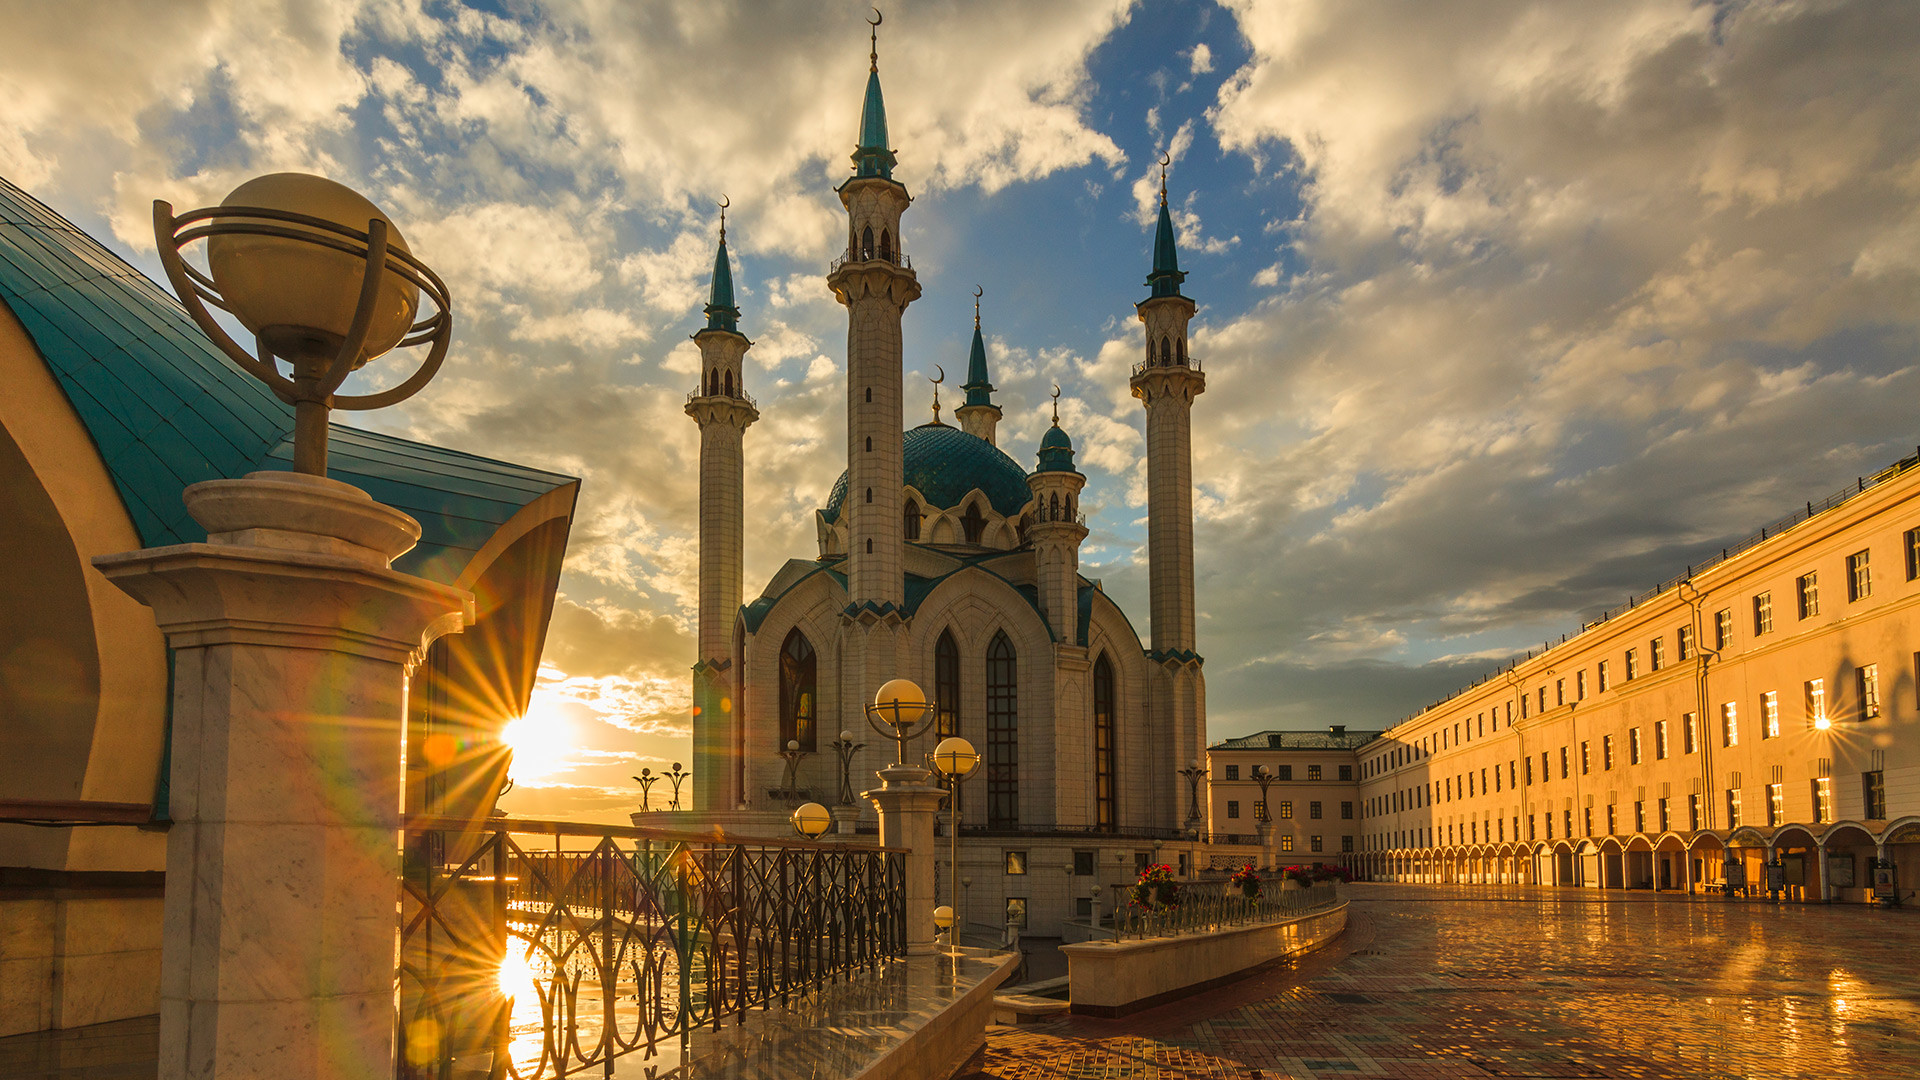 Kul Sharif mosque in the Kazan Kremlin